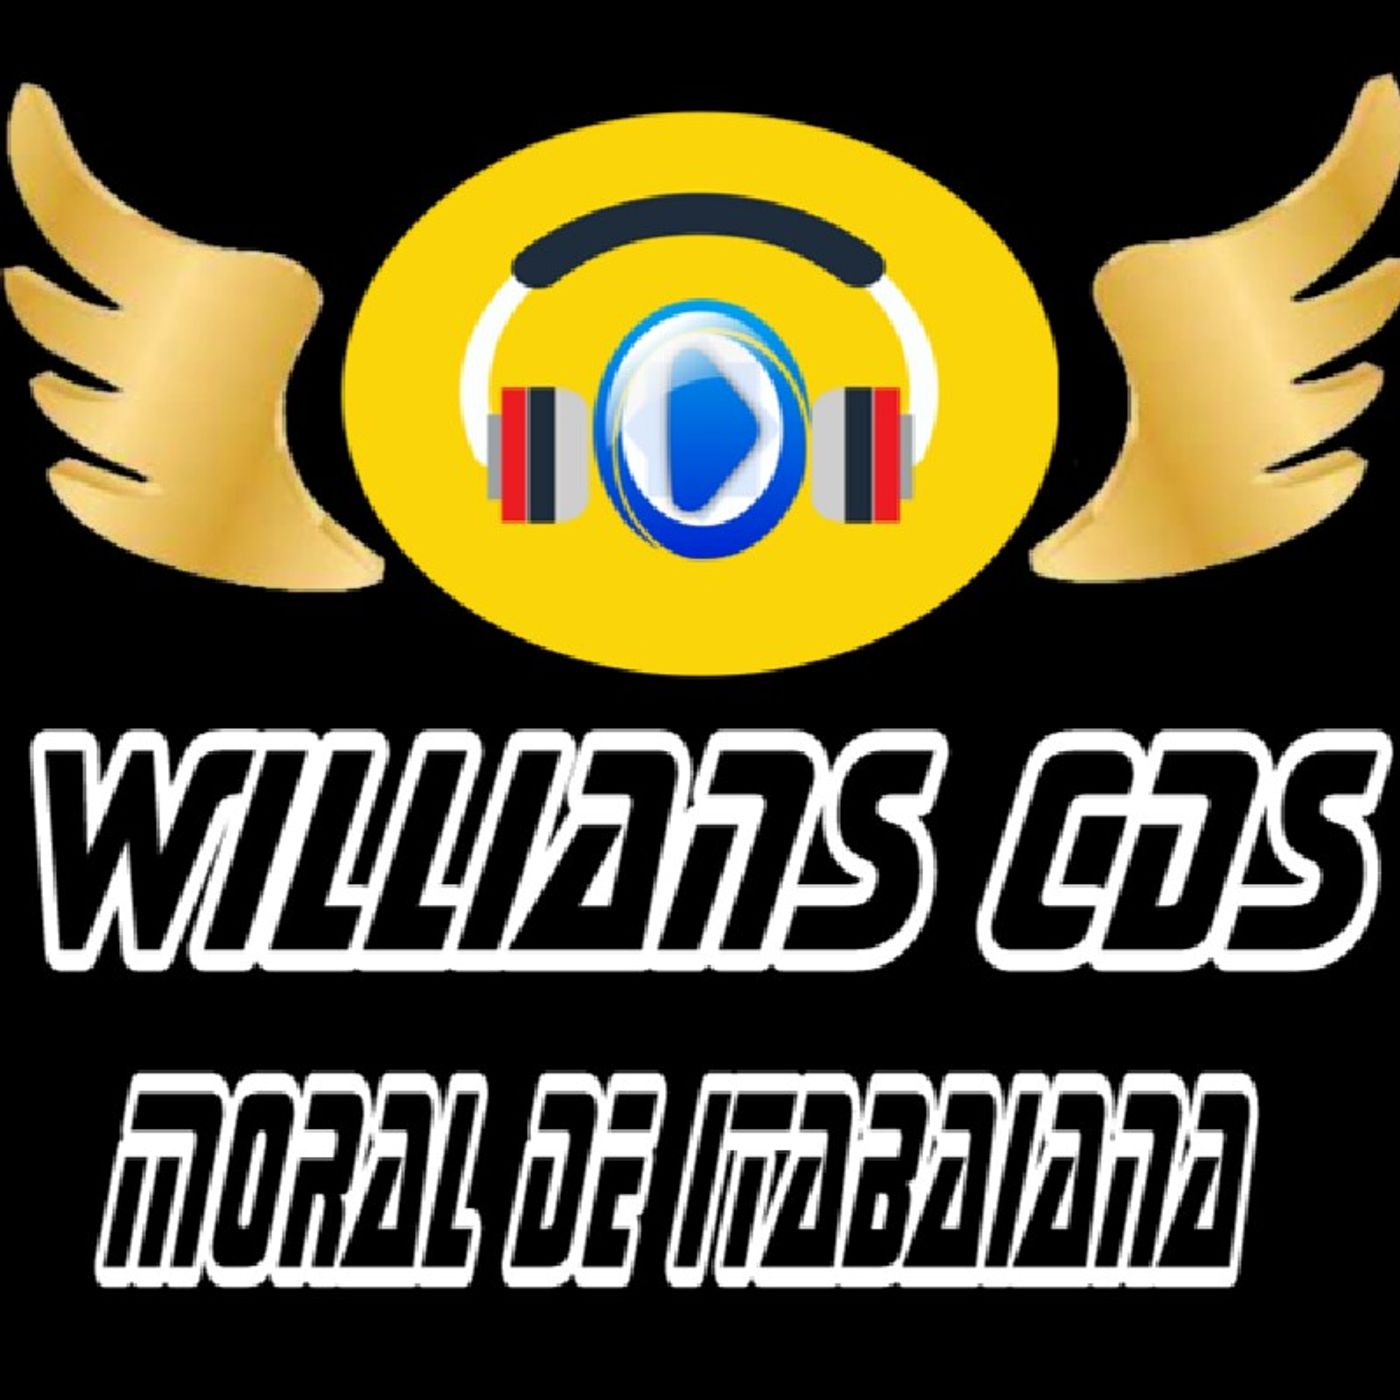 Radio Willians cds Moral De Itabaiana